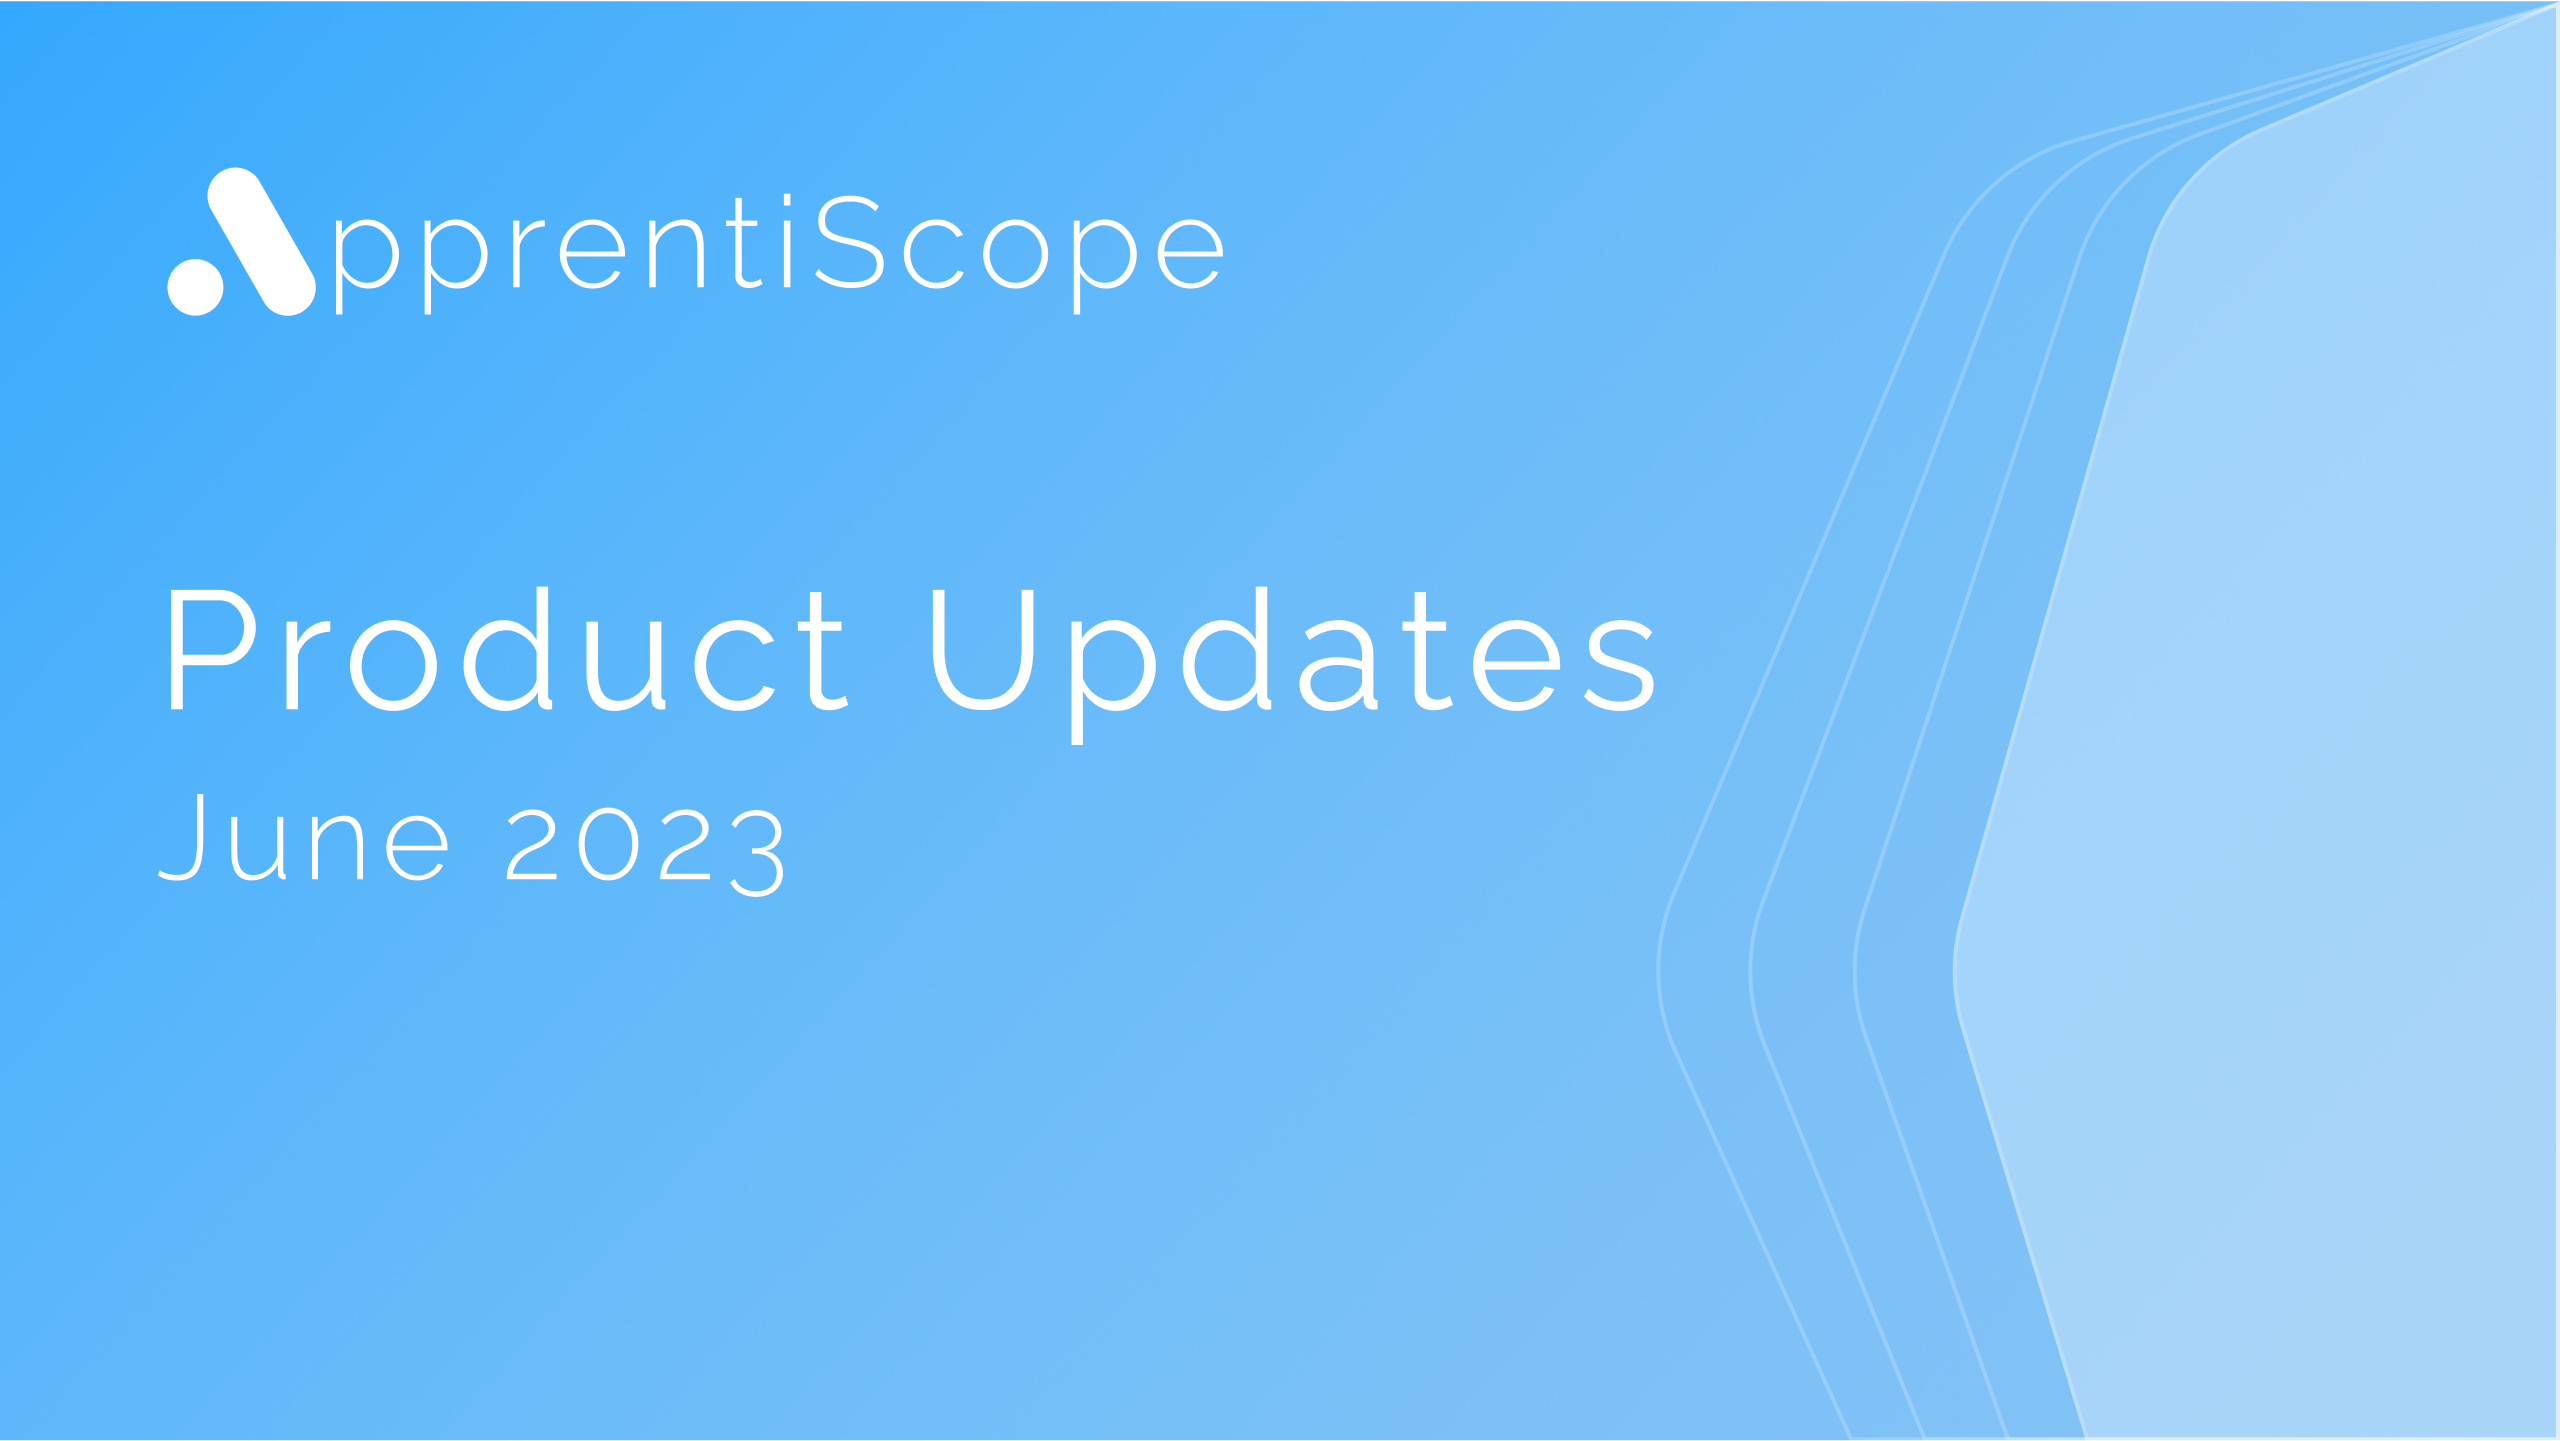 June Product Updates